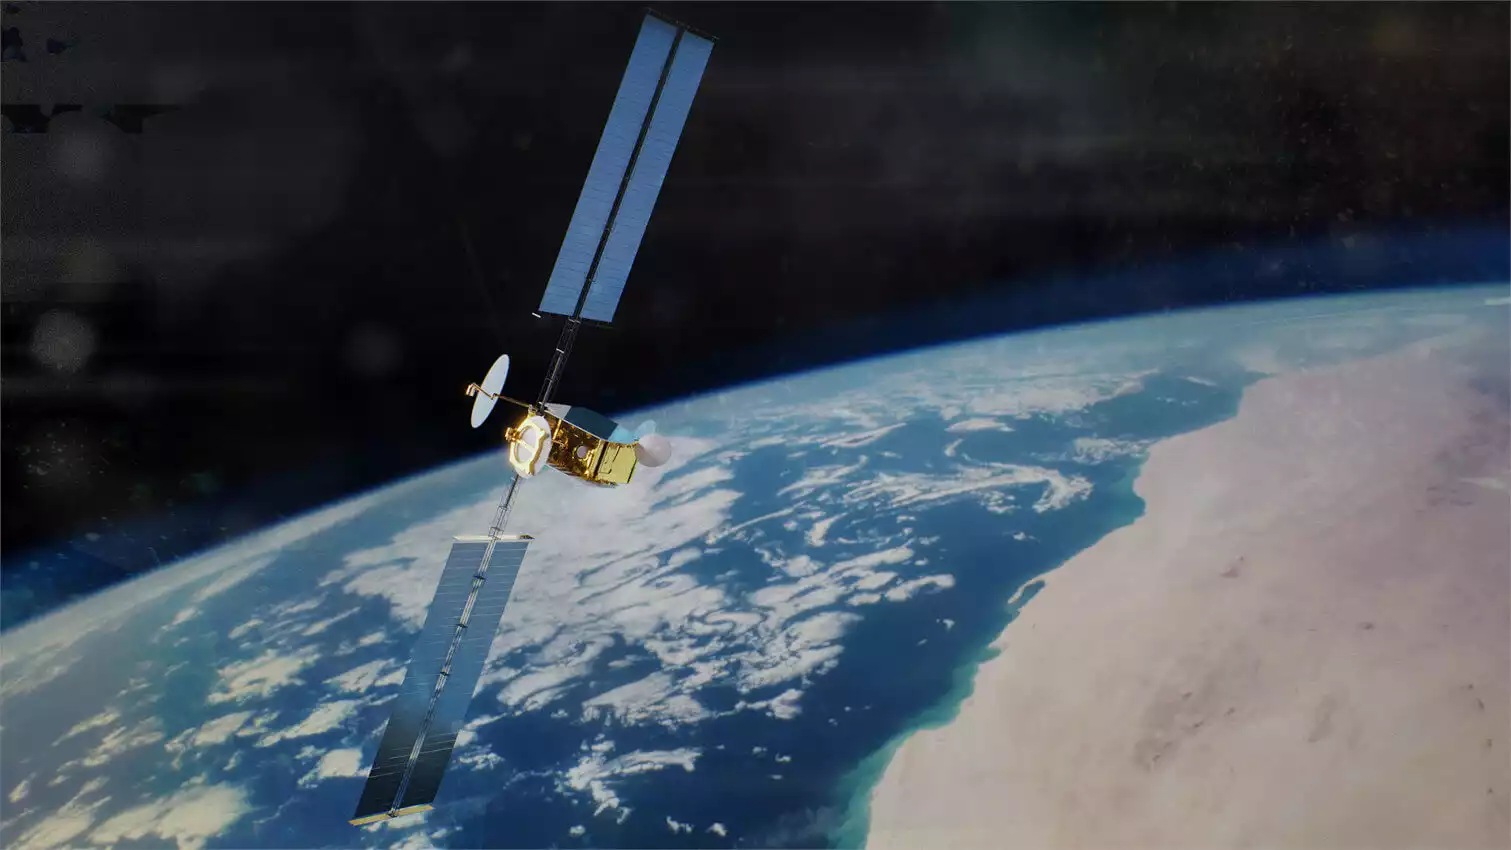 Thaicom signe un contrat avec Airbus pour un satellite de télécommunications flexible OneSat